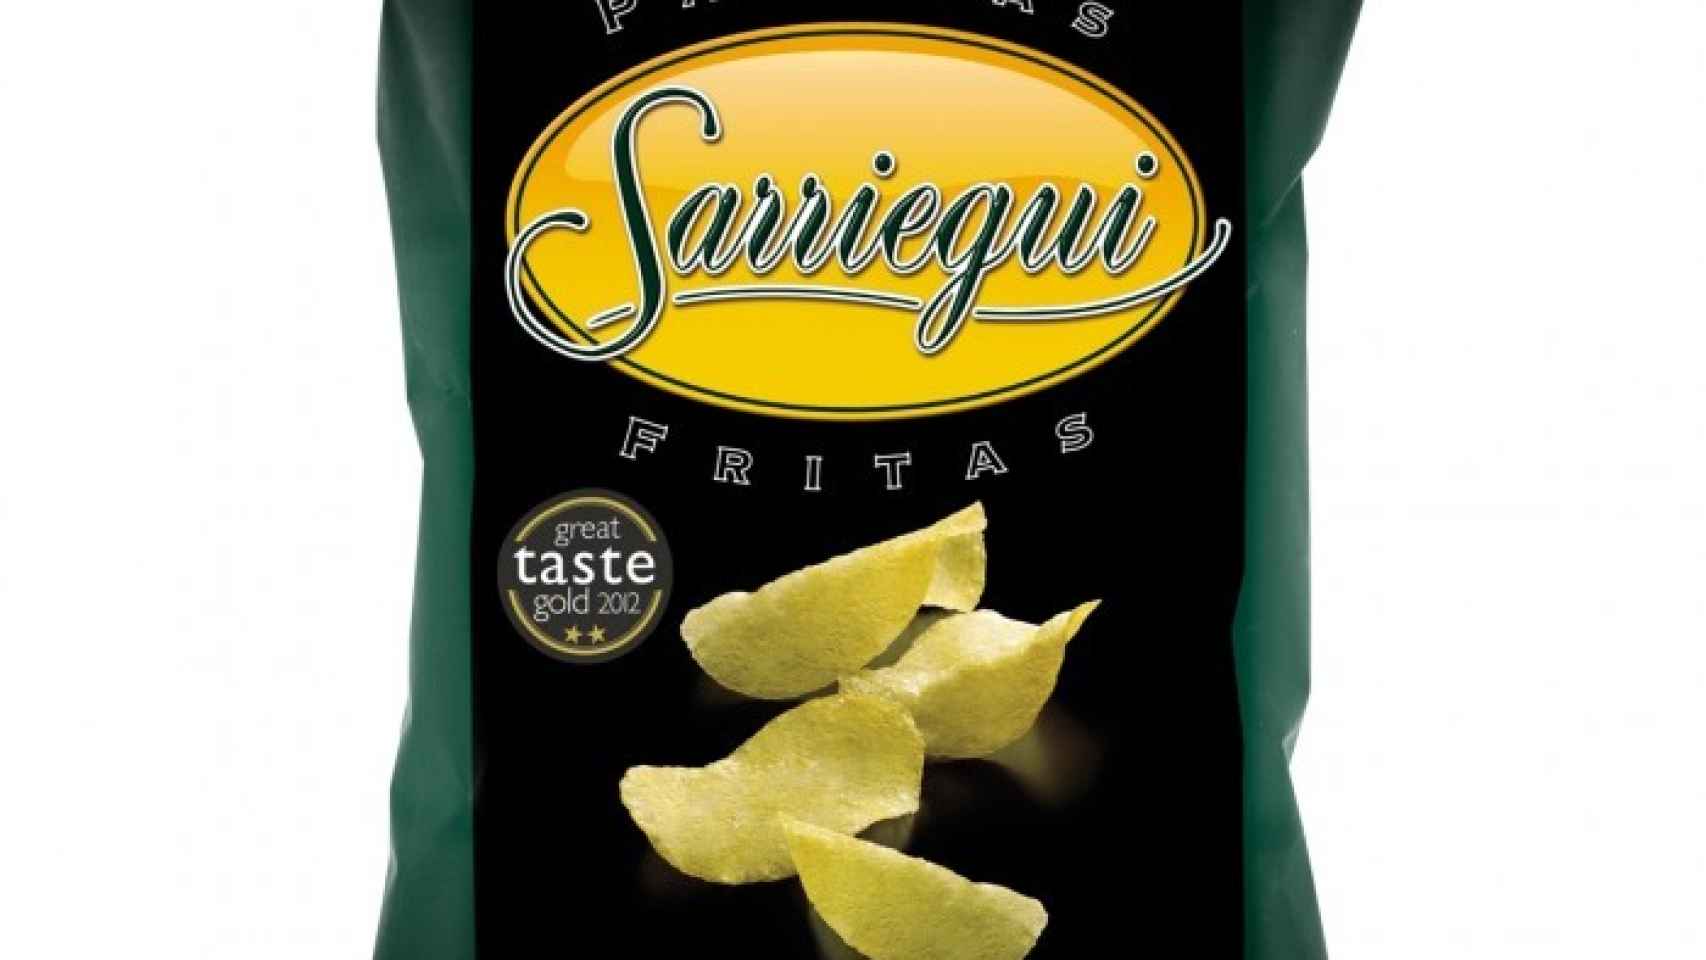 Patatas Fritas Gourmet Sarriegui